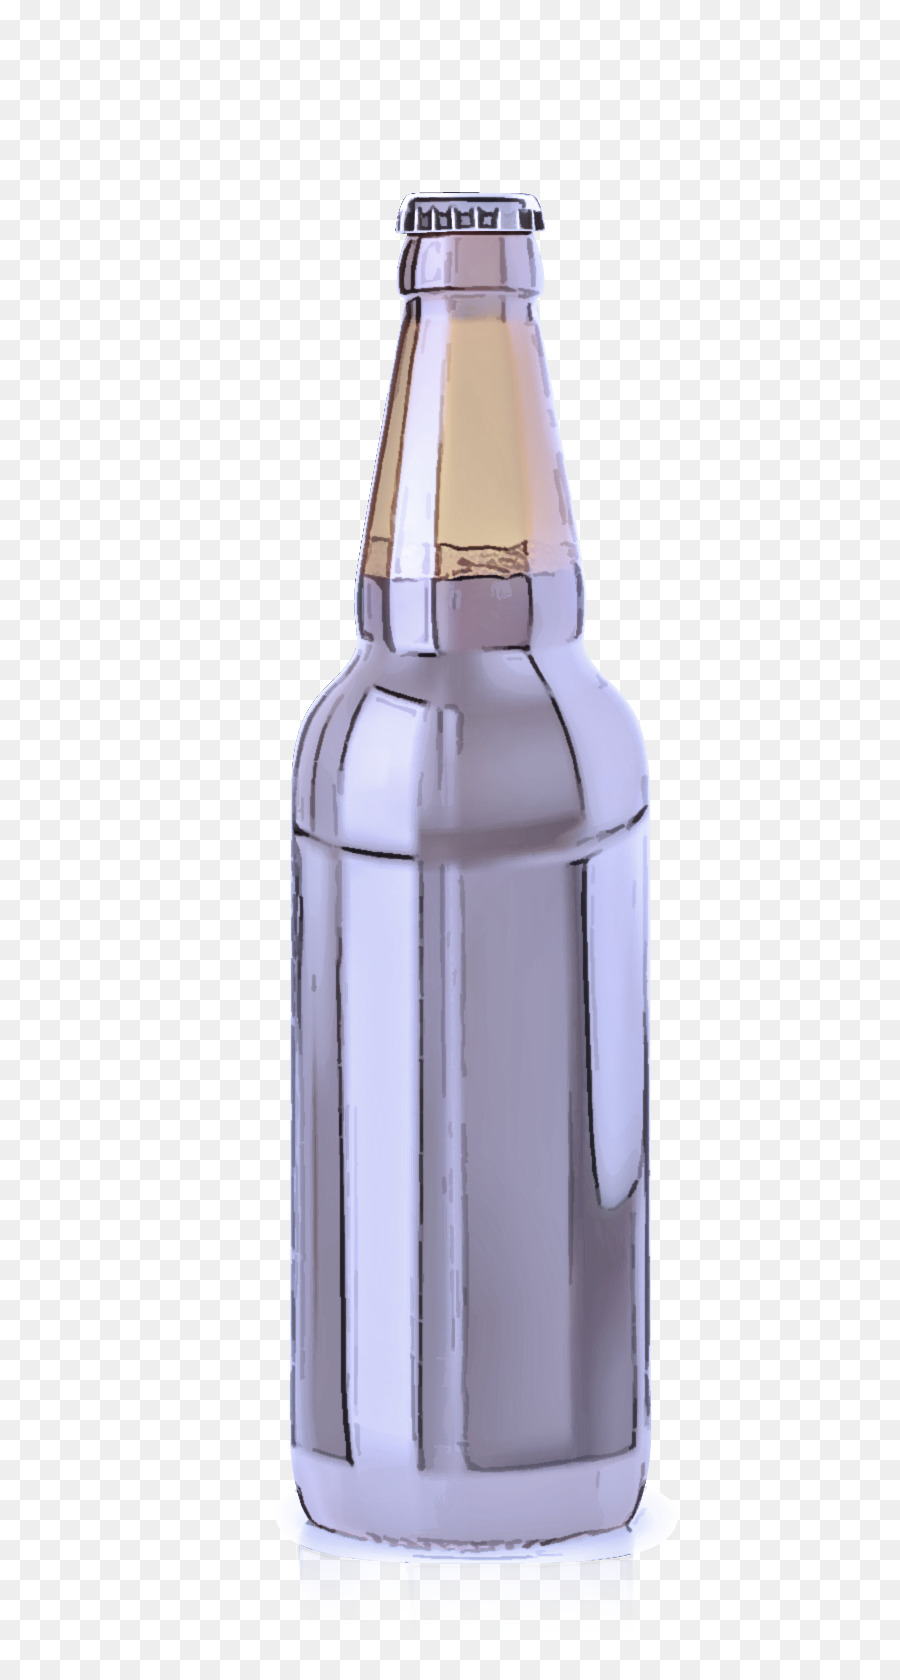 glass bottle beer bottle glass bottle purple